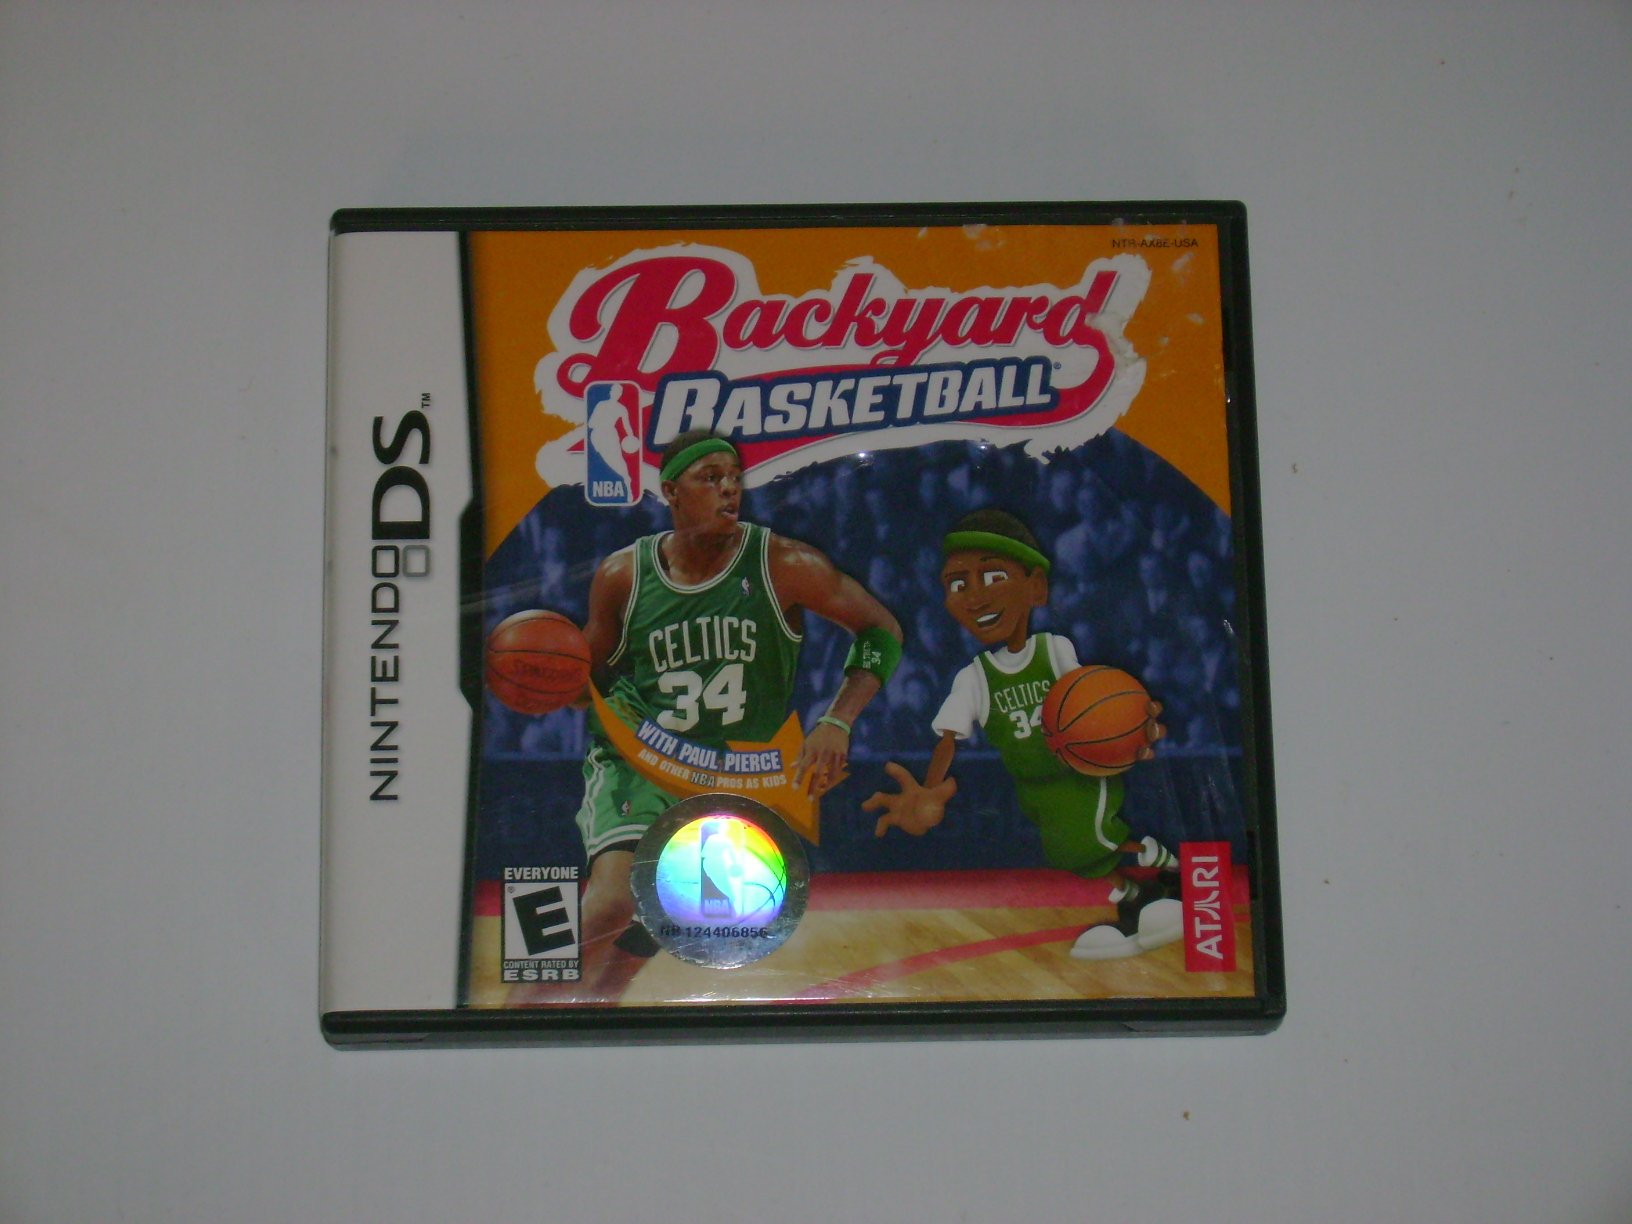 Backyard Basketball - Nintendo DS (Renewed)